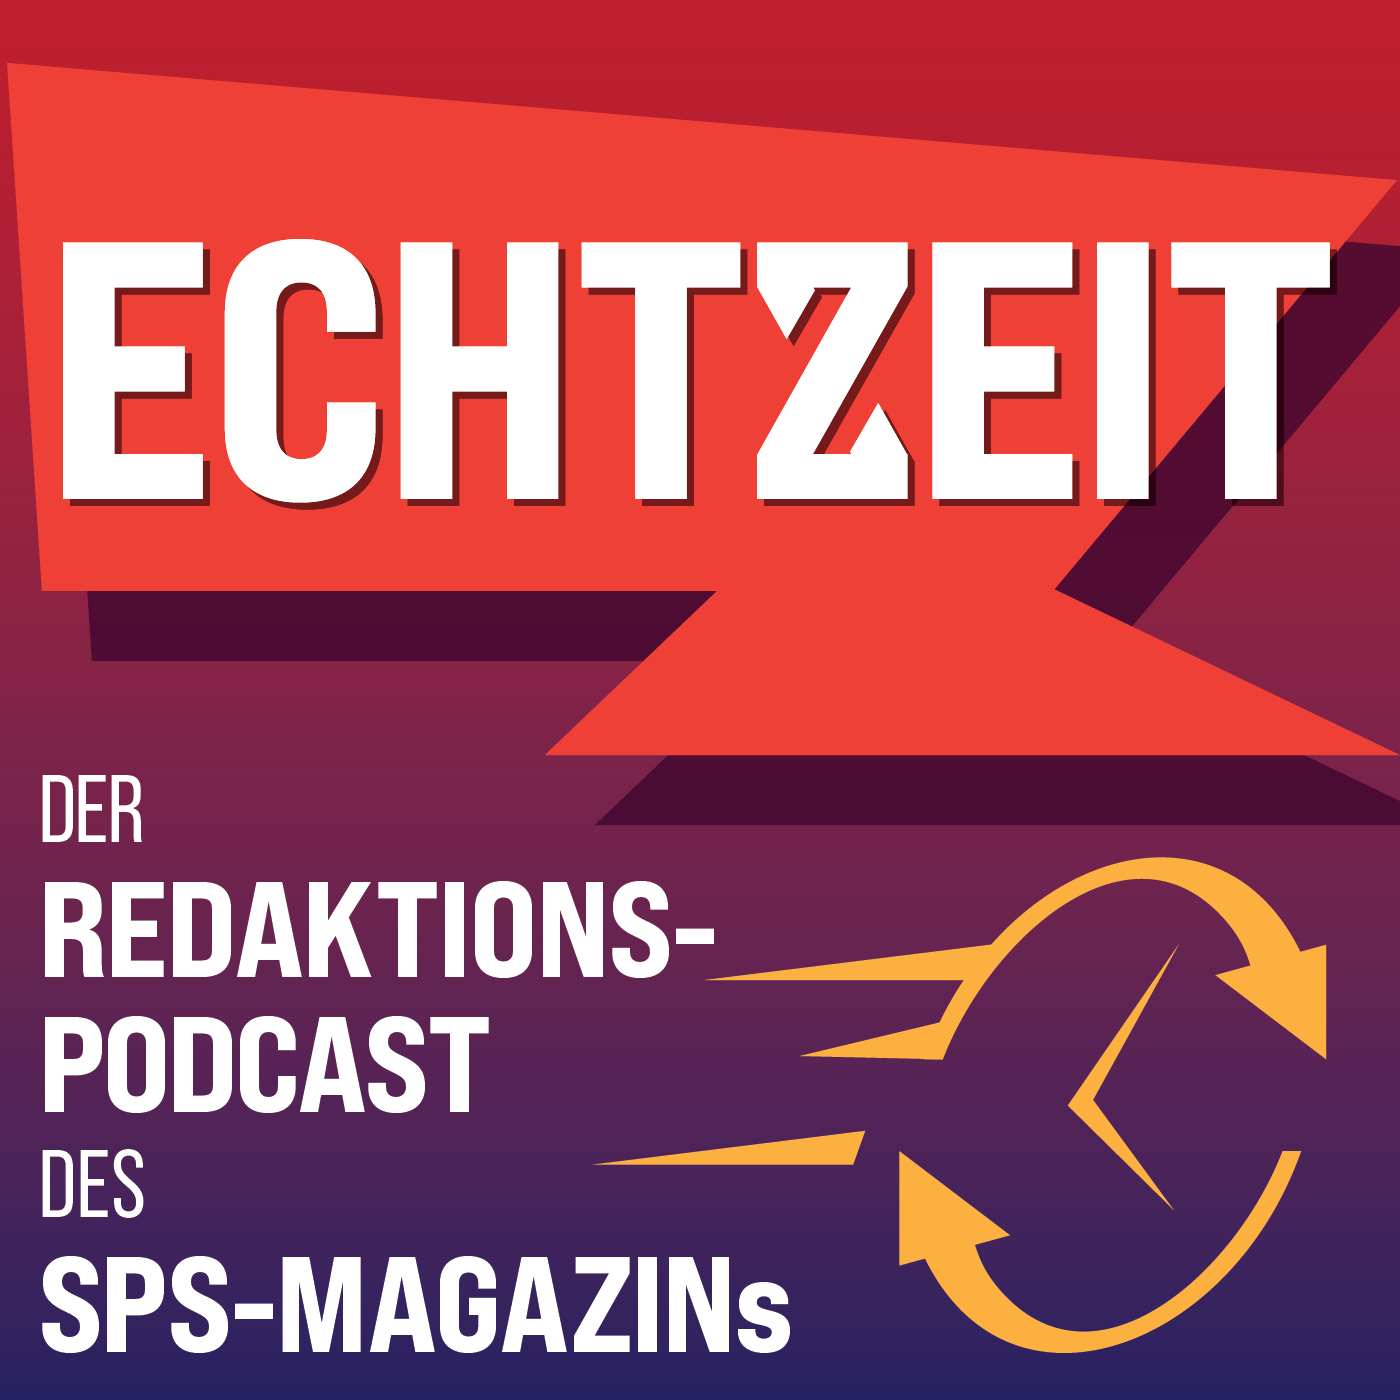 Der neue Redaktions-Podcast